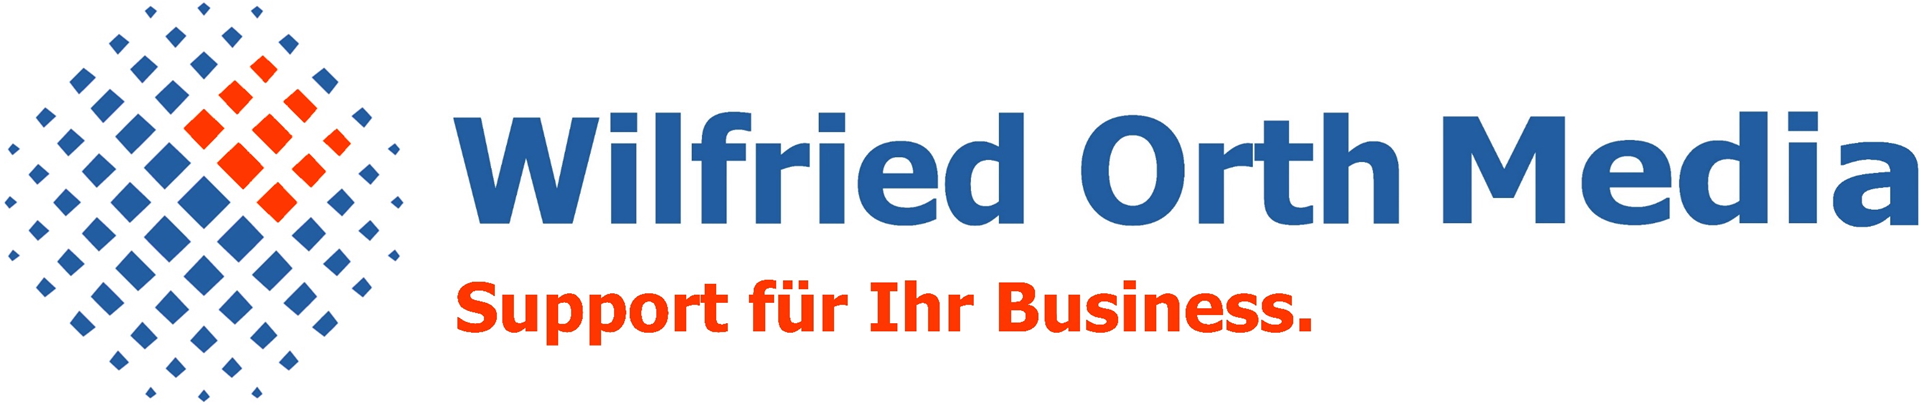 wilfried orth media logo